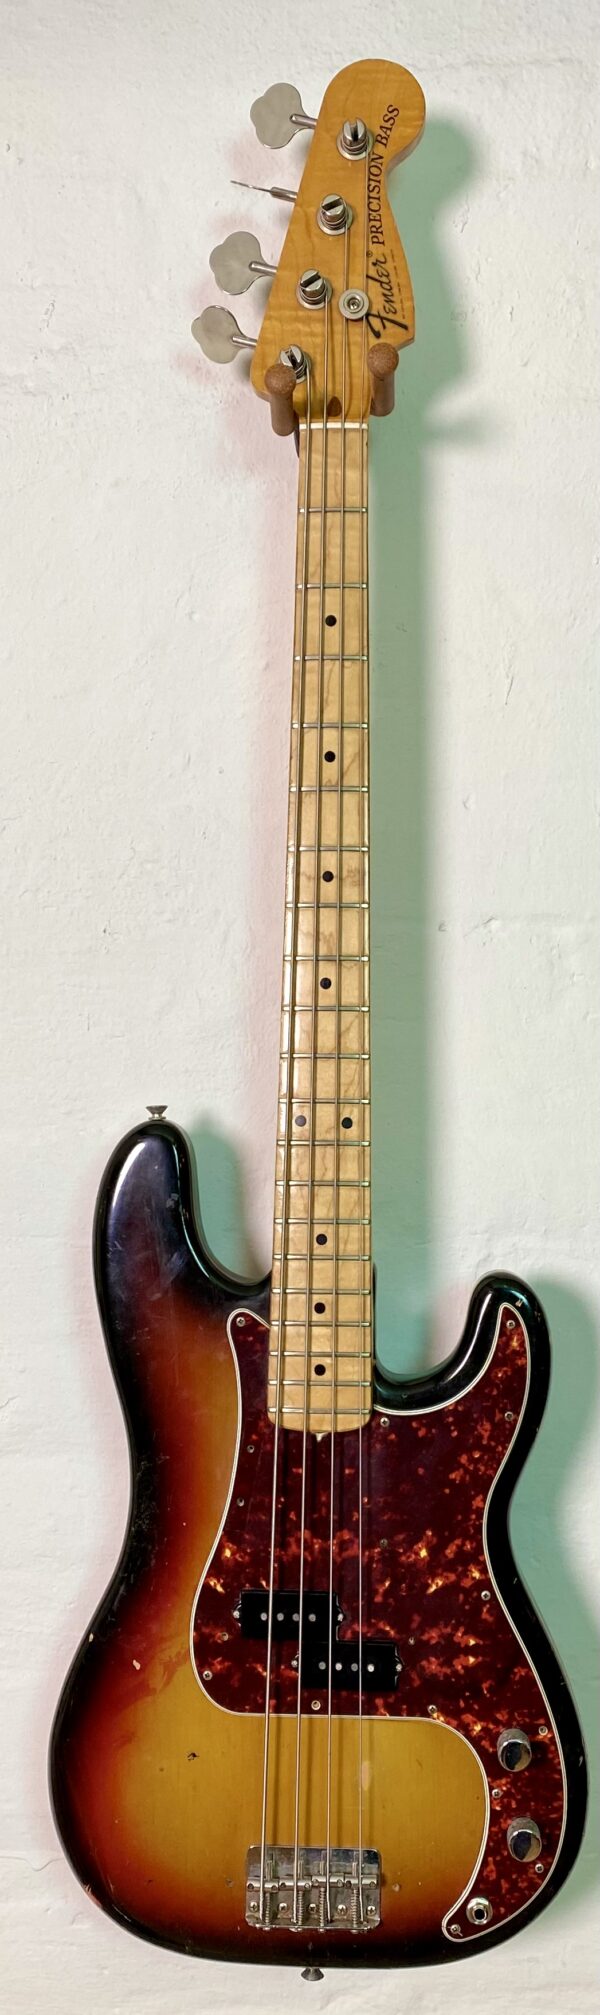 Pre-owned Fender P bass Sunburst (1975)